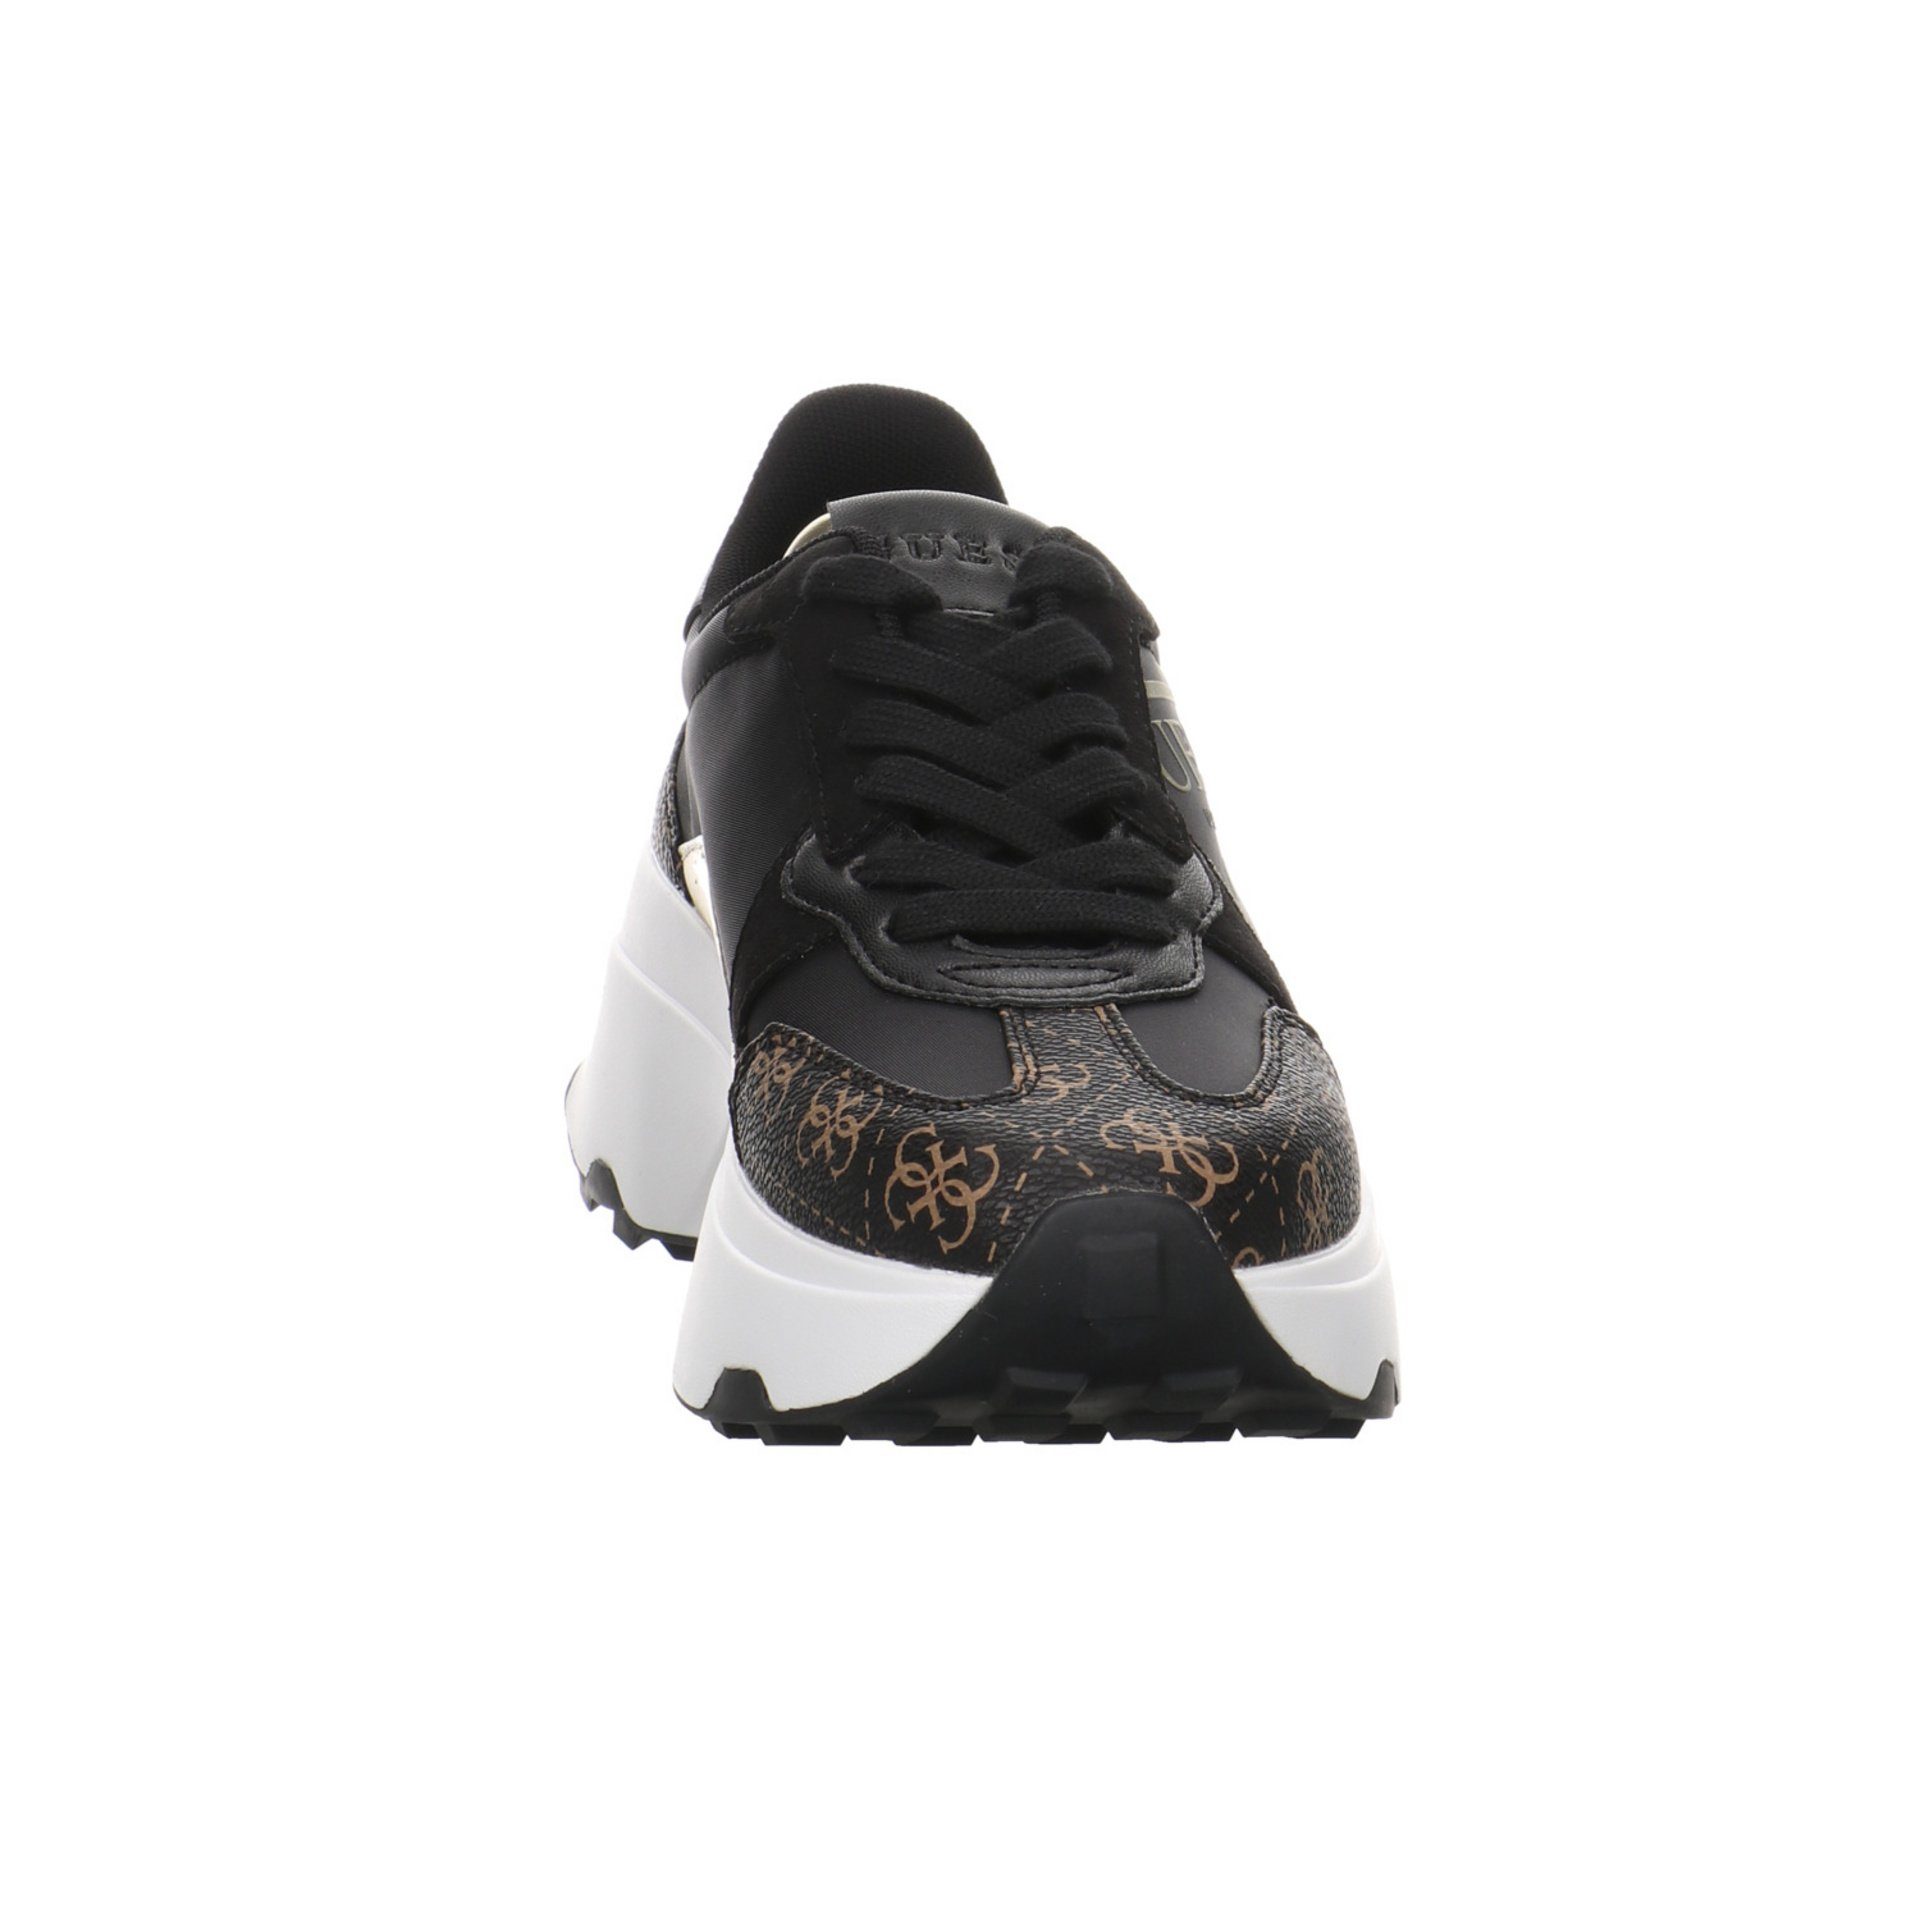 Sneaker black/brown/ocra Calebb Damen Runner Schuhe Guess Synthetikkombination Schnürschuh Sneaker